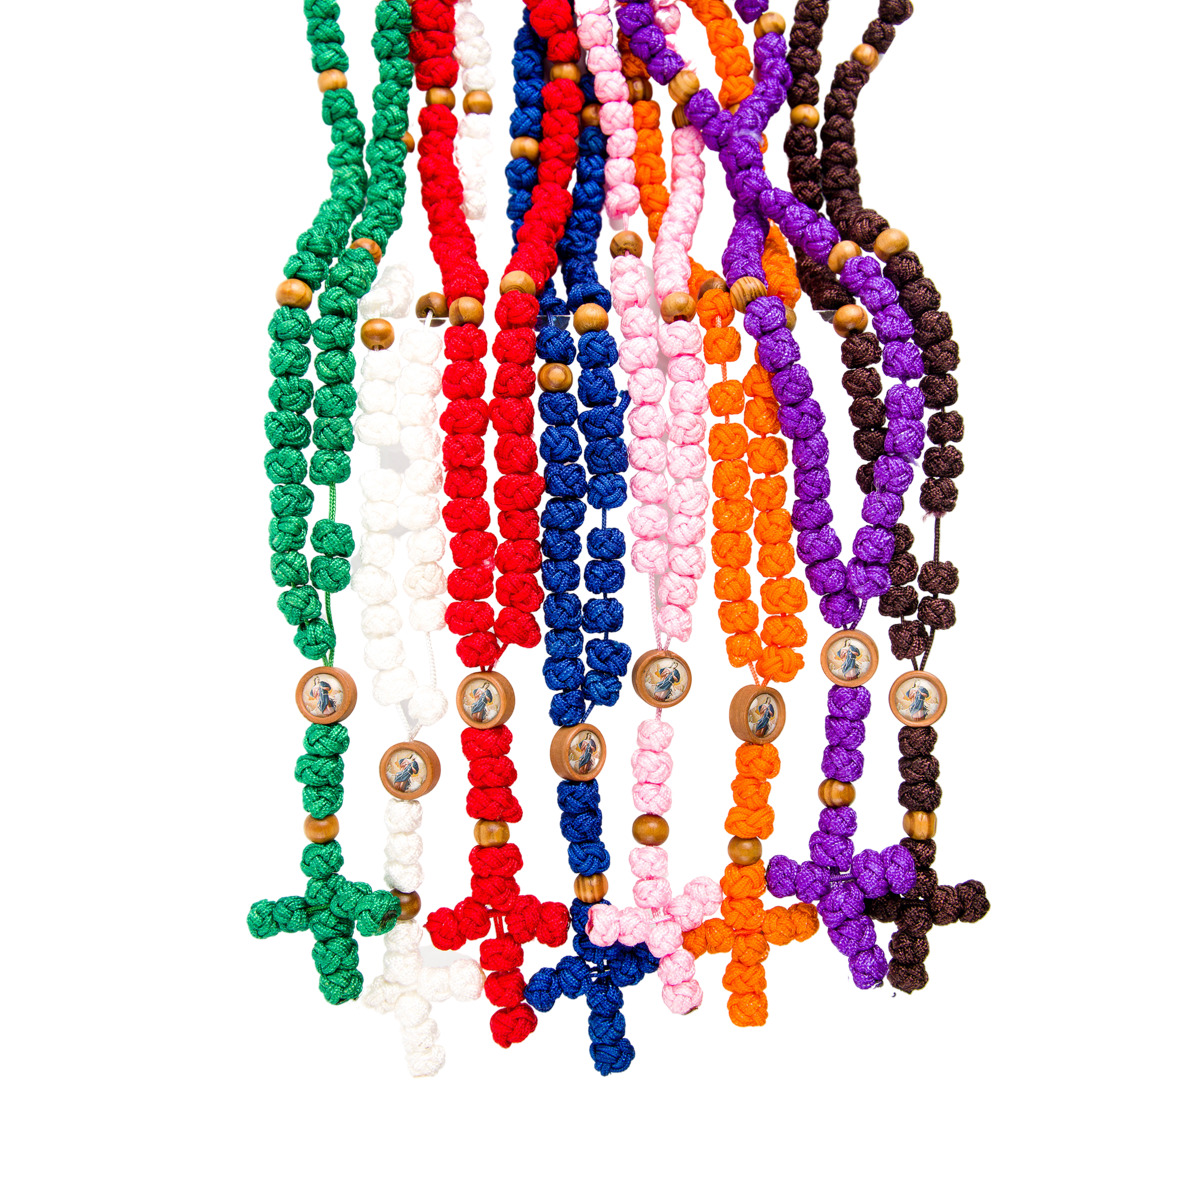 Chapelet de Marie qui défait les noeuds sur corde en forme de noeuds Ø 10 mm, longueur au cœur 18 cm, avec livret de neuvaine.